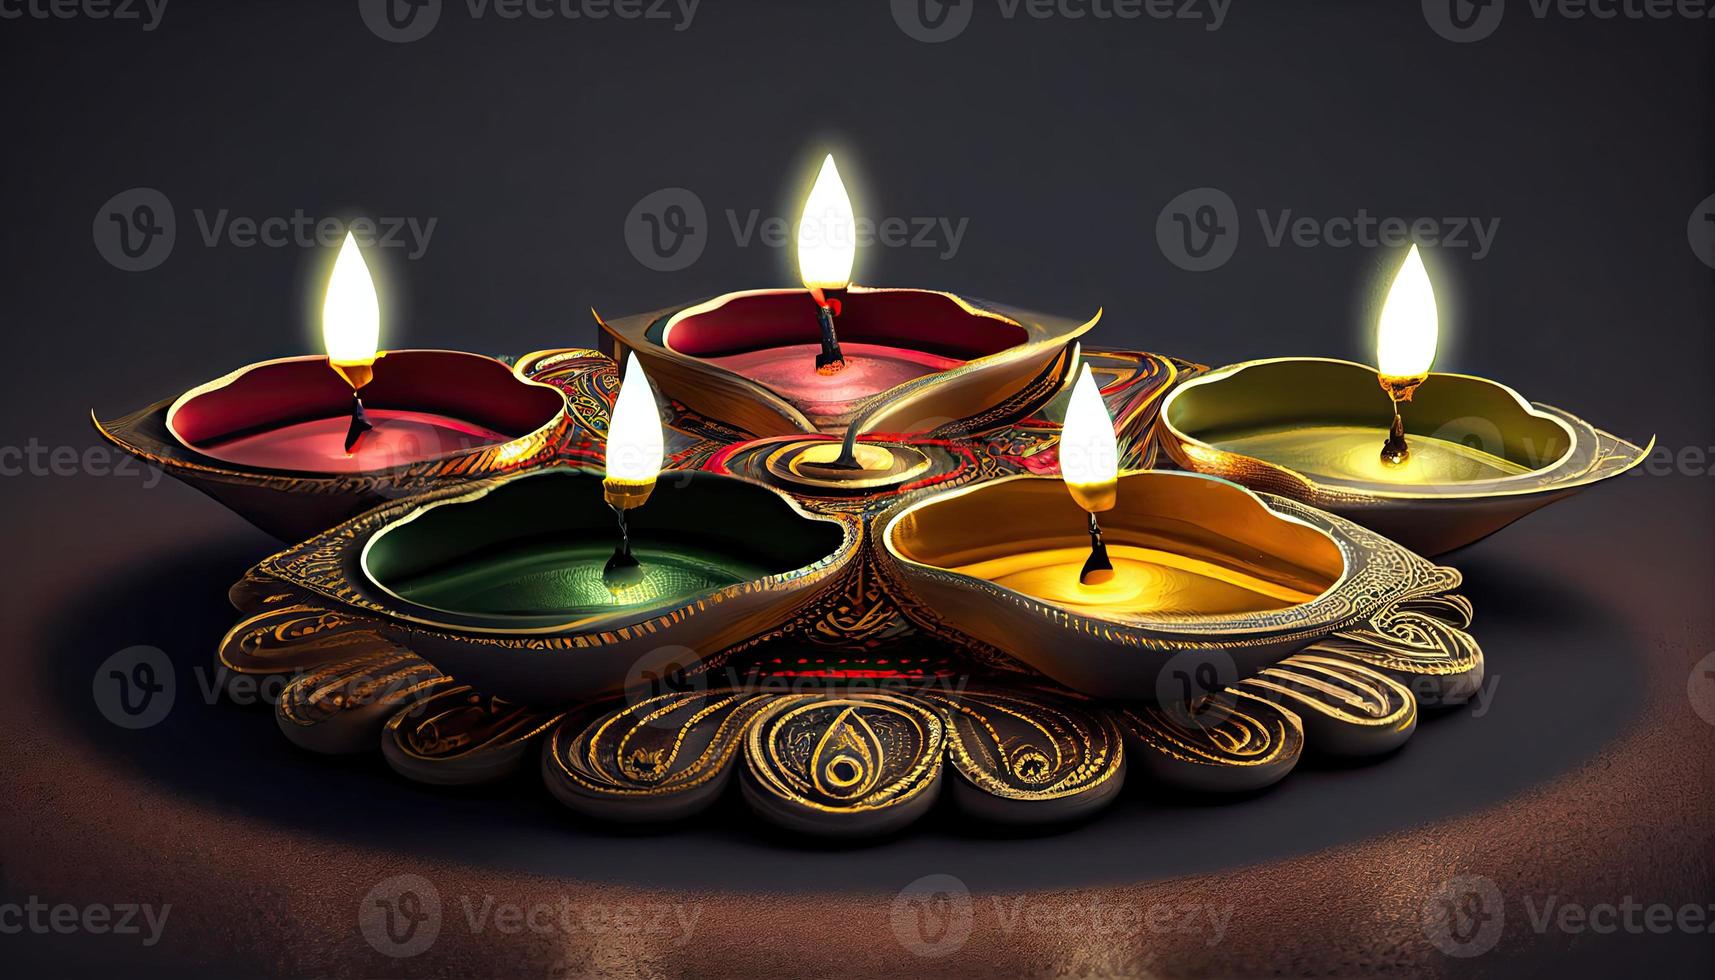 diwali el triunfo de ligero y amabilidad hindú festival de luces celebracion diya petróleo lamparas 24 octubre foto